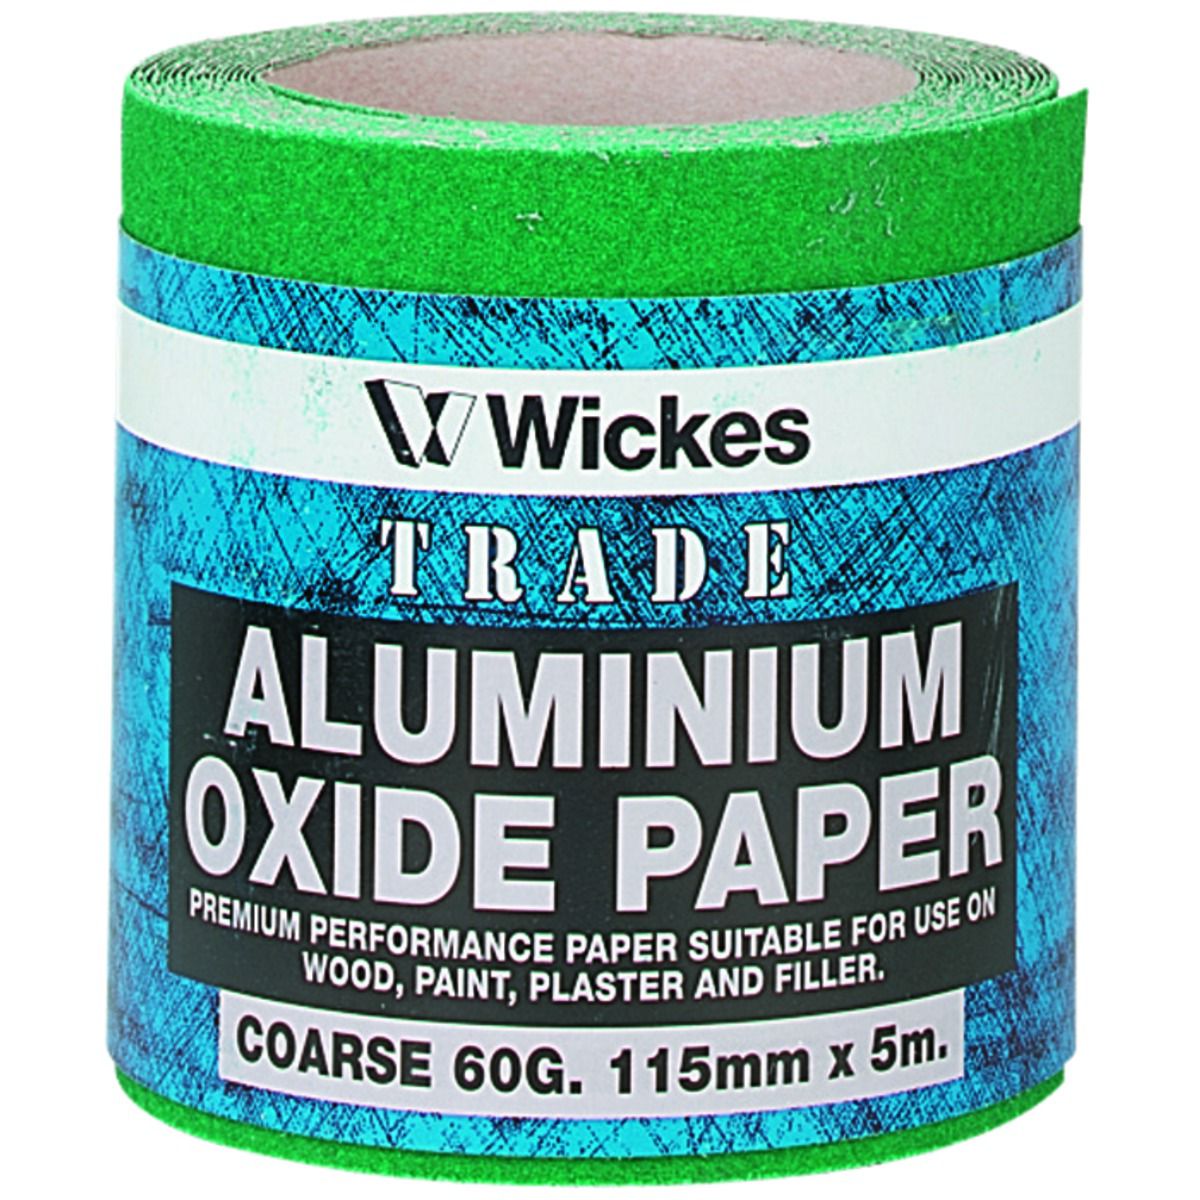 Image of Wickes Aluminium Oxide Coarse Sandpaper Roll - 5m